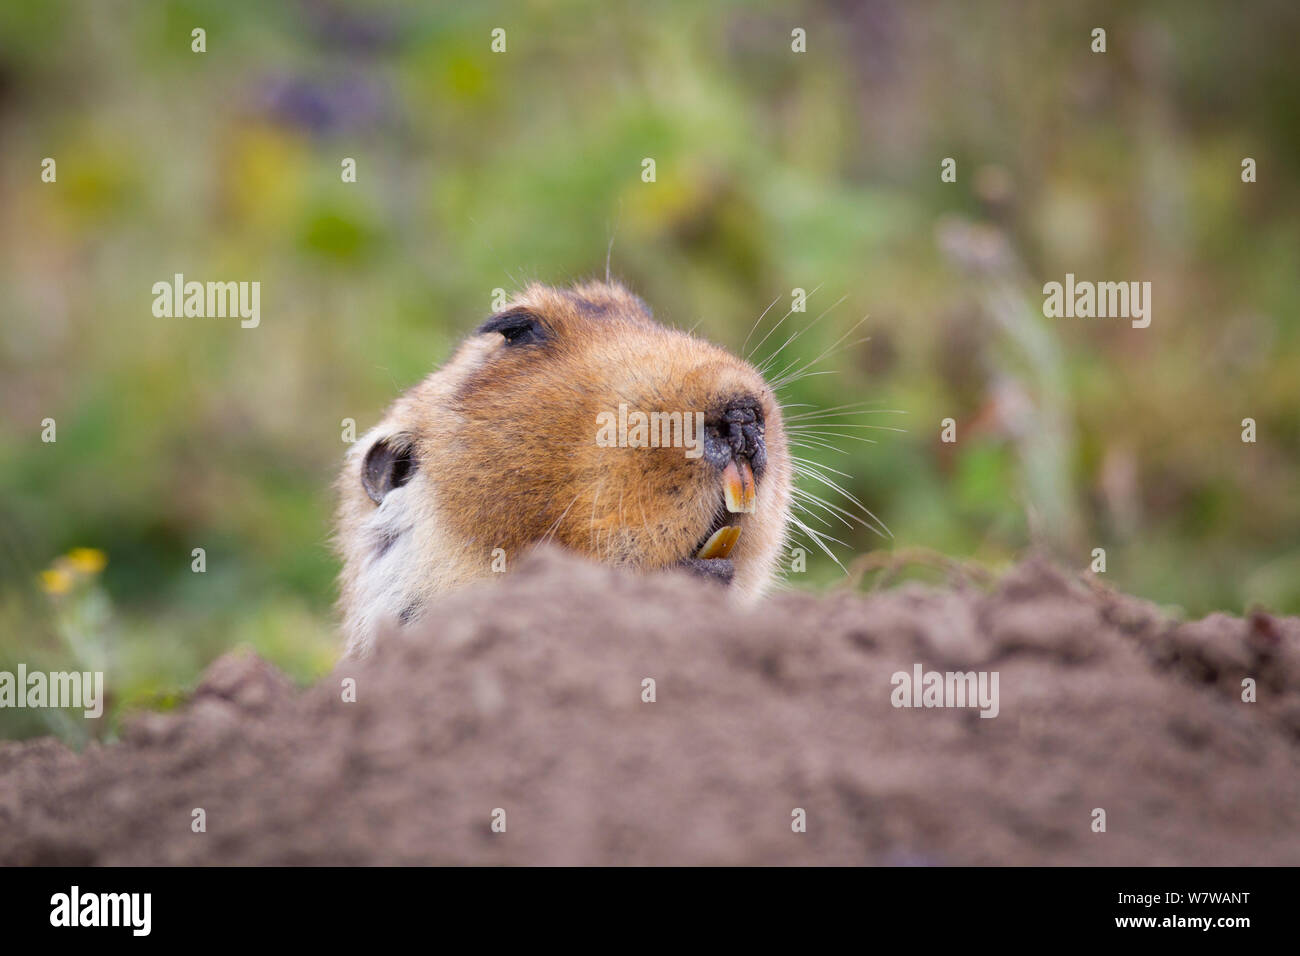 Grande capo-mole di ratto (Tachyoryctes macrocephalus) che figurano nel relativo foro, Bale Mountains National Park, Etiopia. Foto Stock